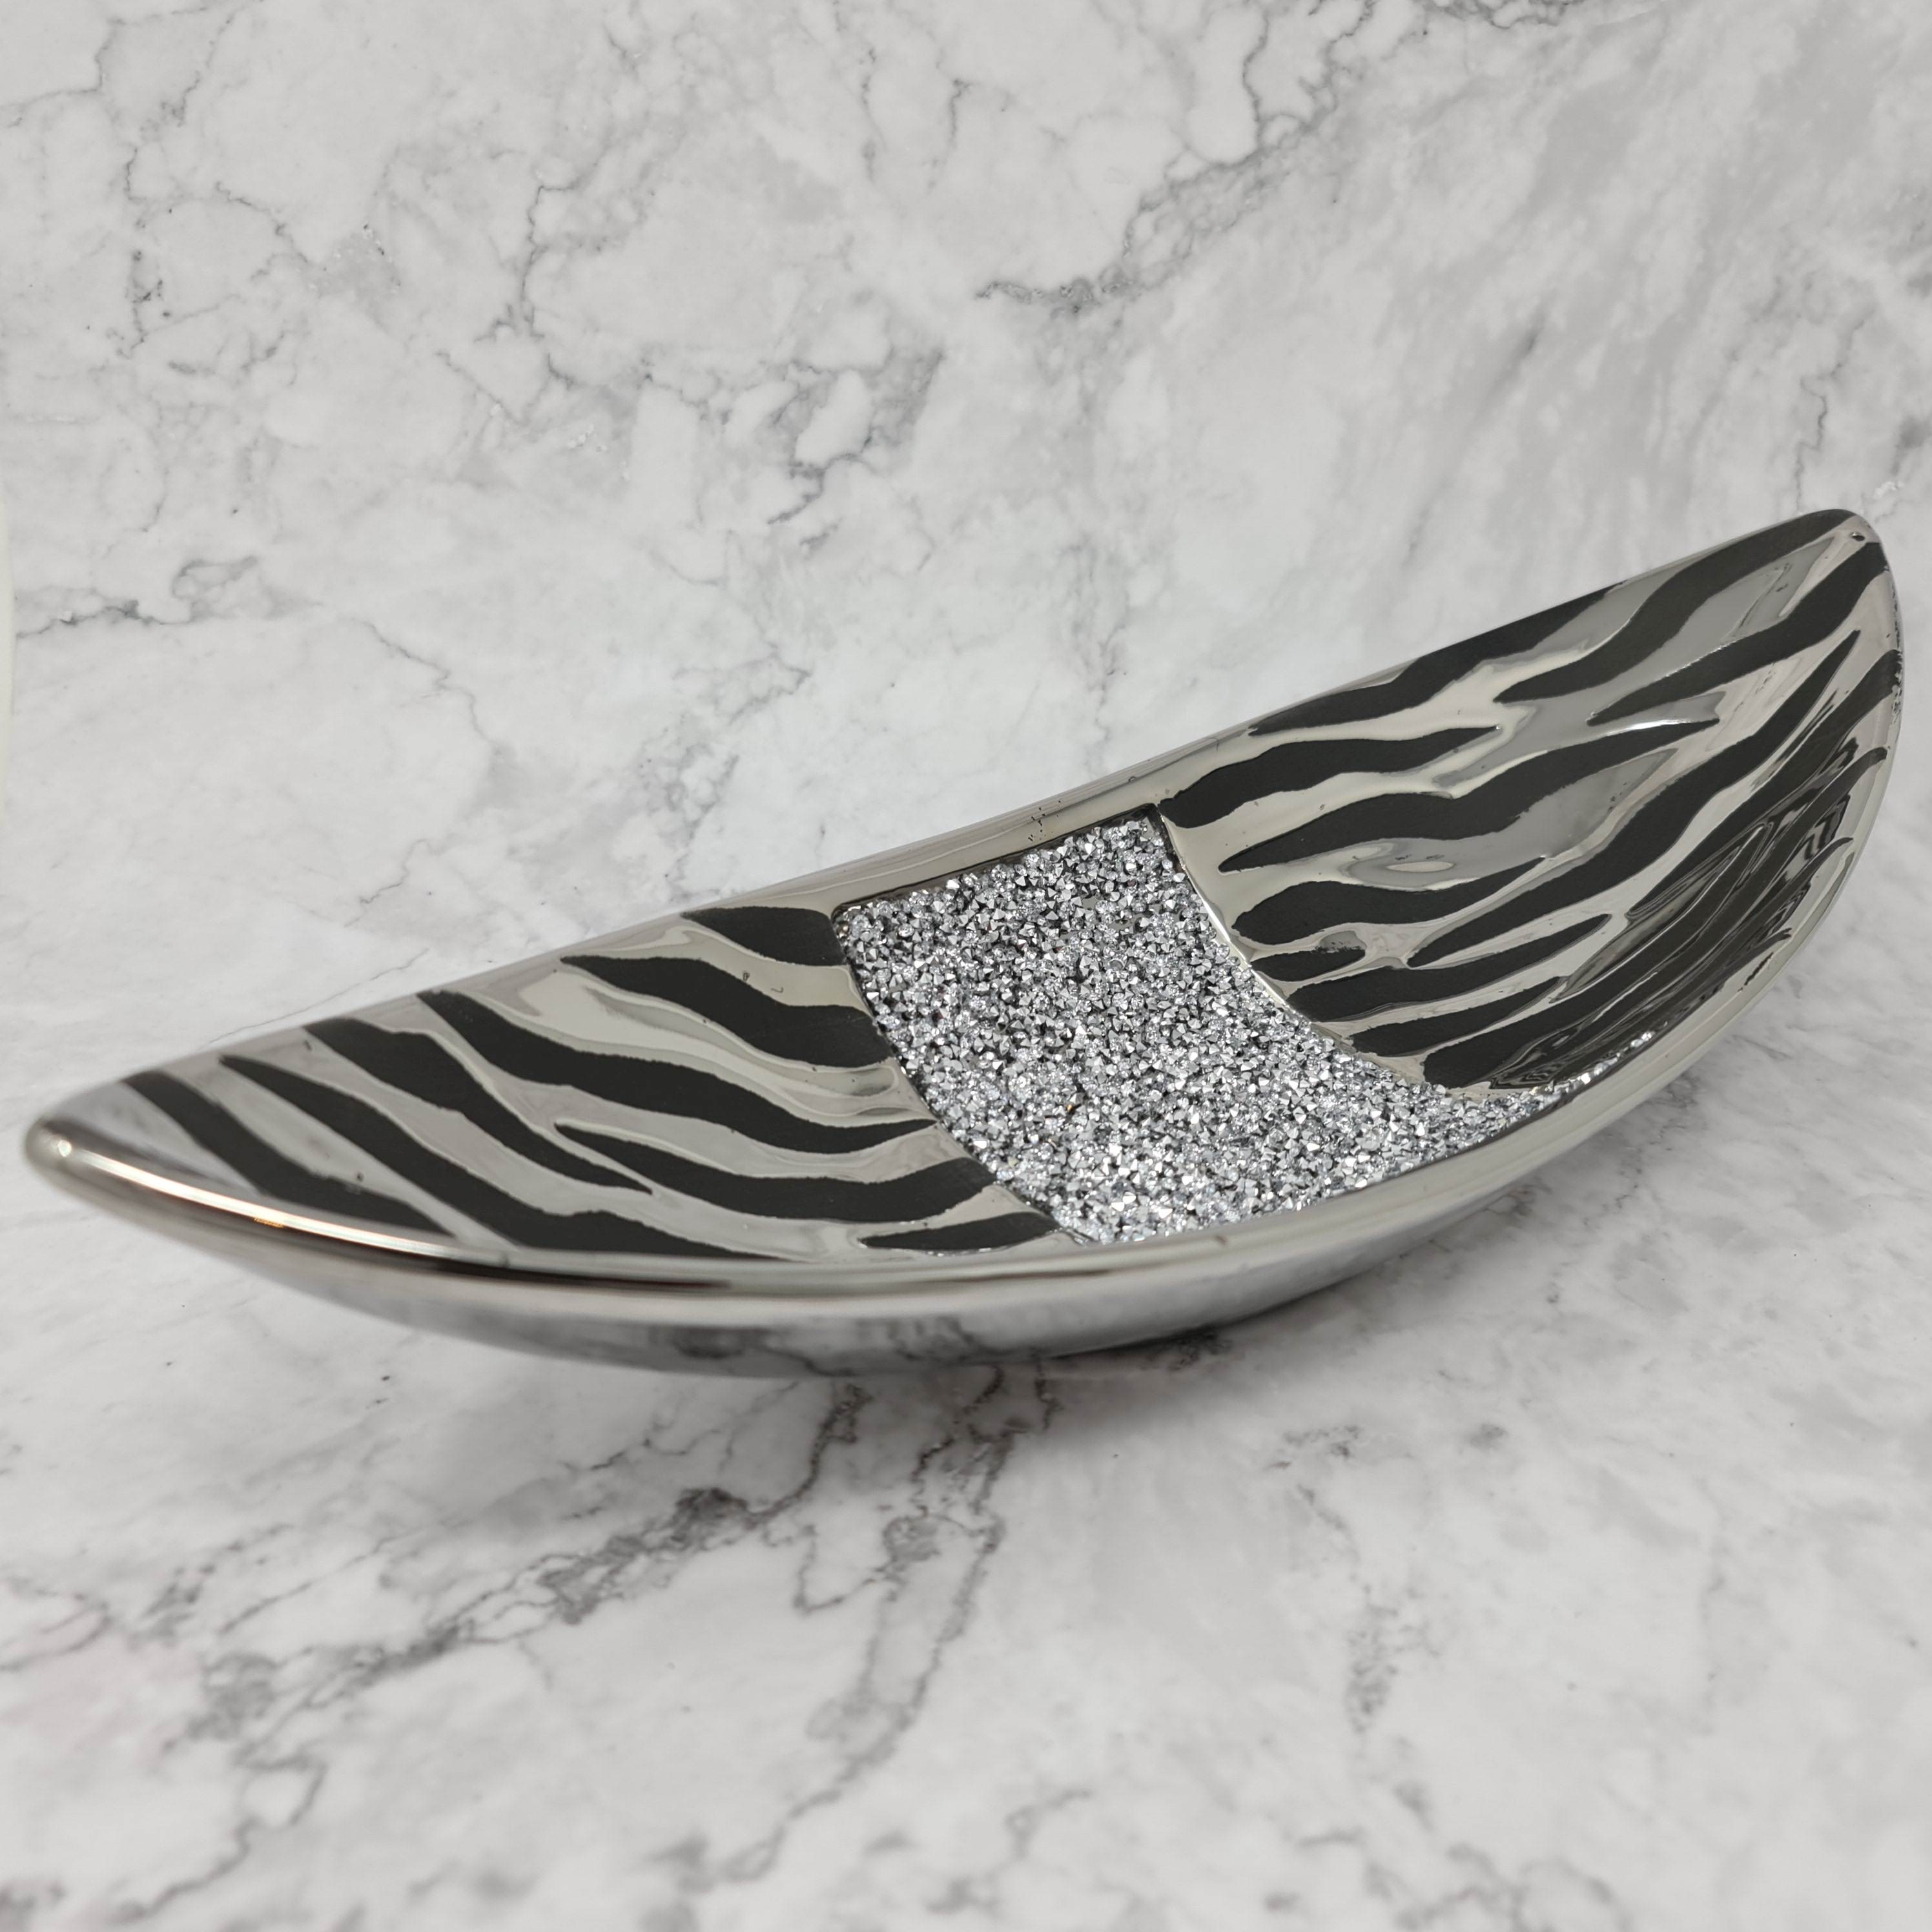 Lifestyle & More Wunderschöne Dekoschale Obstschale Schale Teller aus Keramik Stone Silber Durchmesser 25 cm